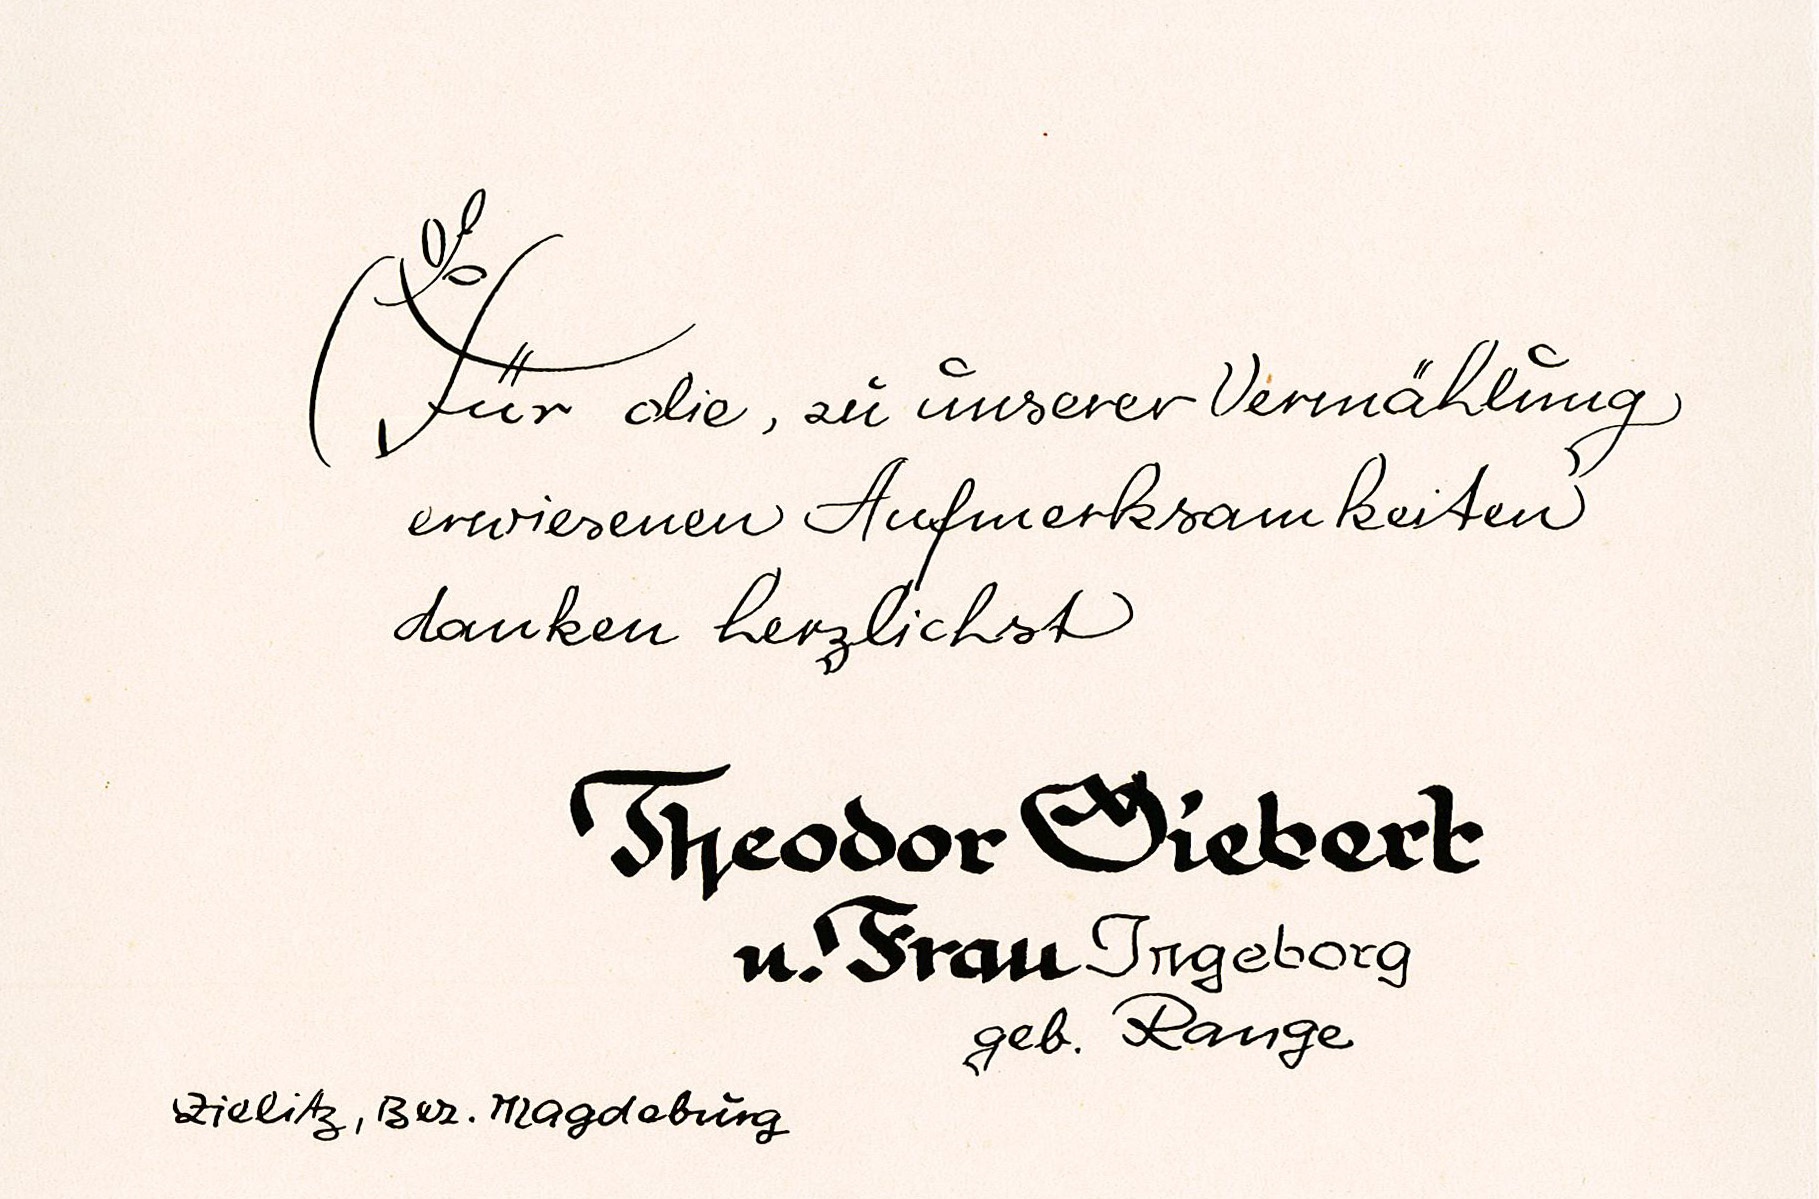 Dankeskarte zur Hochzeit von Ingeborg Range und Theodor Siebert, 30. Oktober 1948 (Museum Wolmirstedt RR-F)